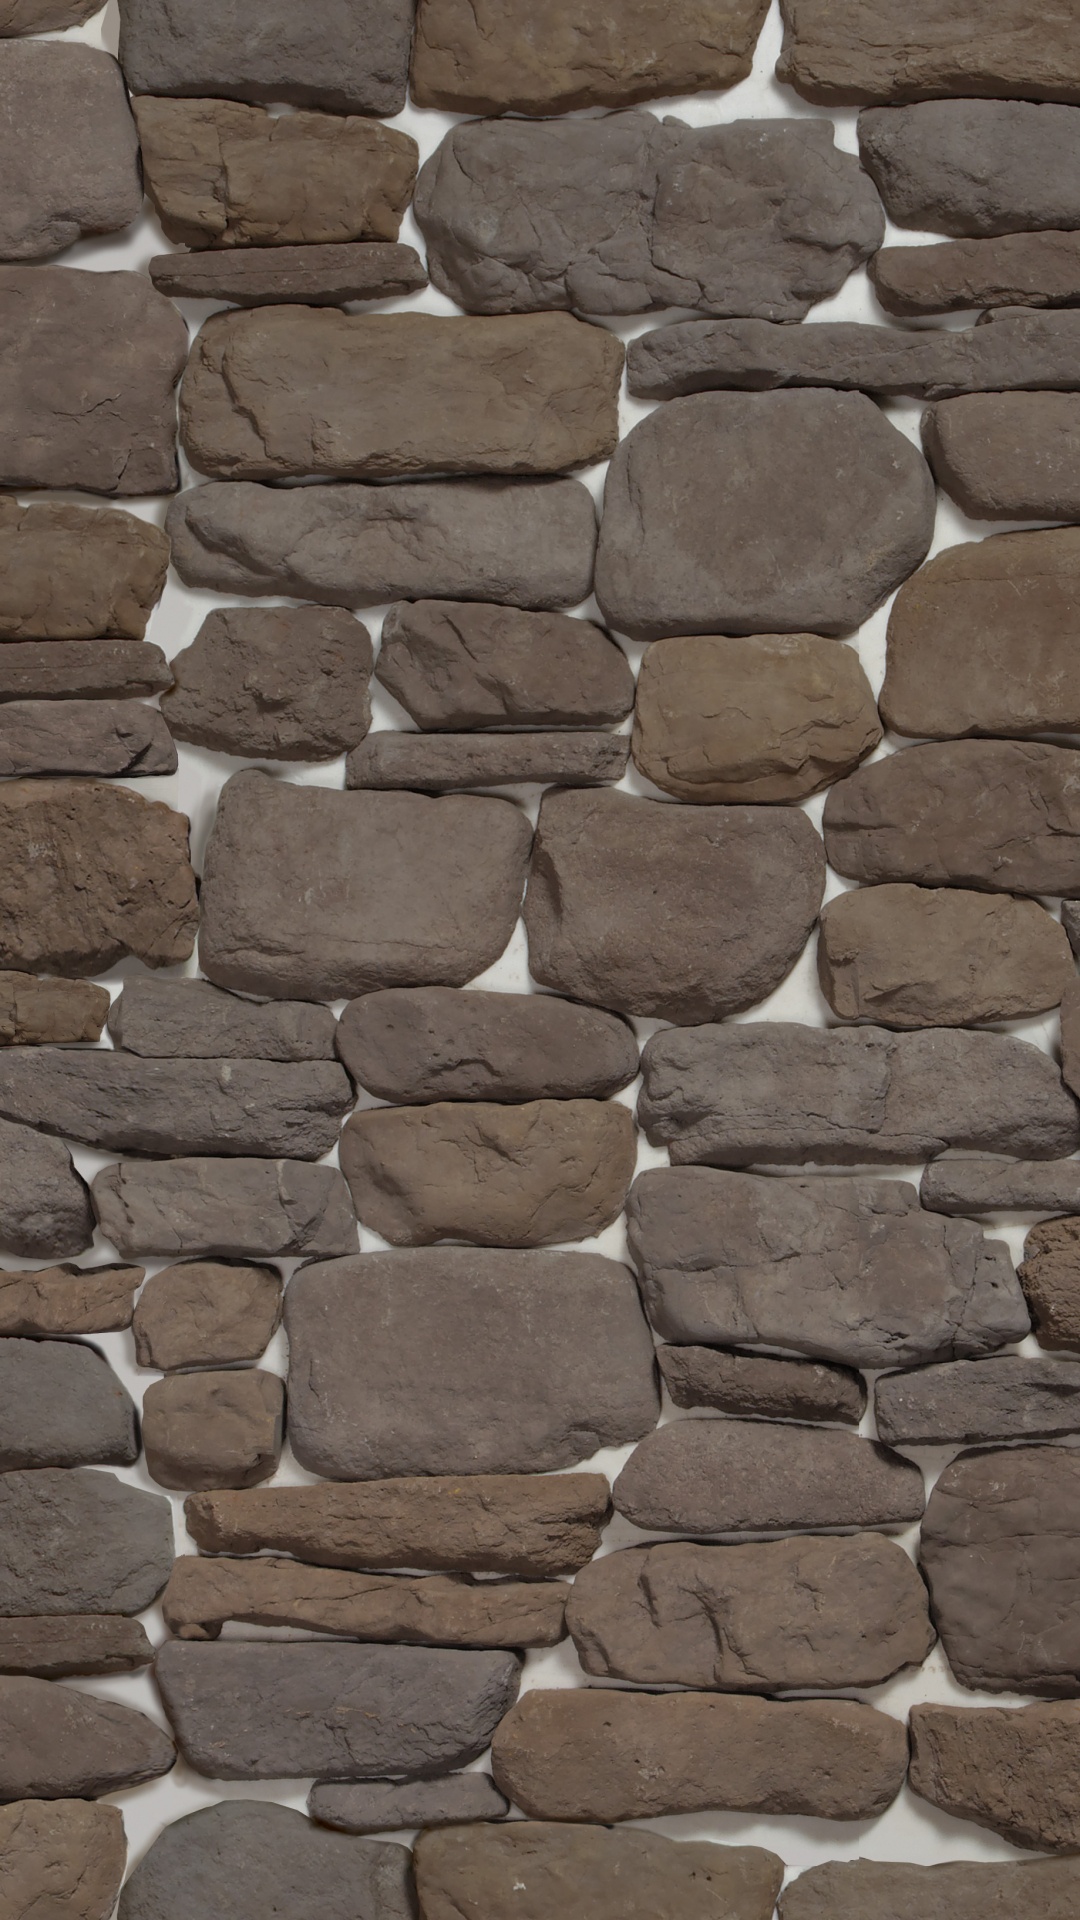 石壁, 人造石, 复, 砖, 鹅卵石 壁纸 1080x1920 允许